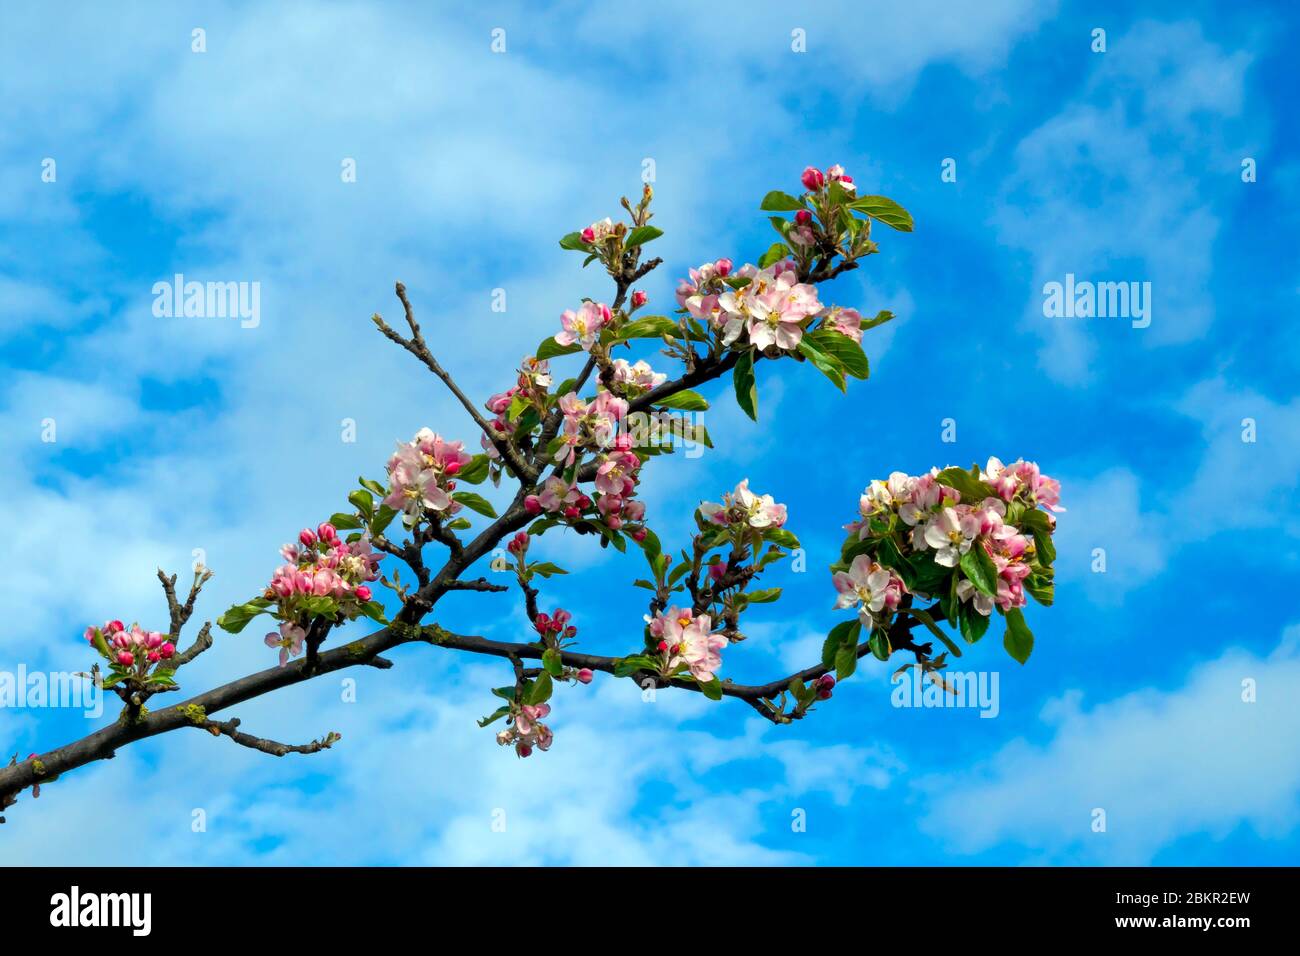 Fioritura primaverile su un albero di Melo Malus domestica che cresce selvaggio accanto a una linea ferroviaria Foto Stock